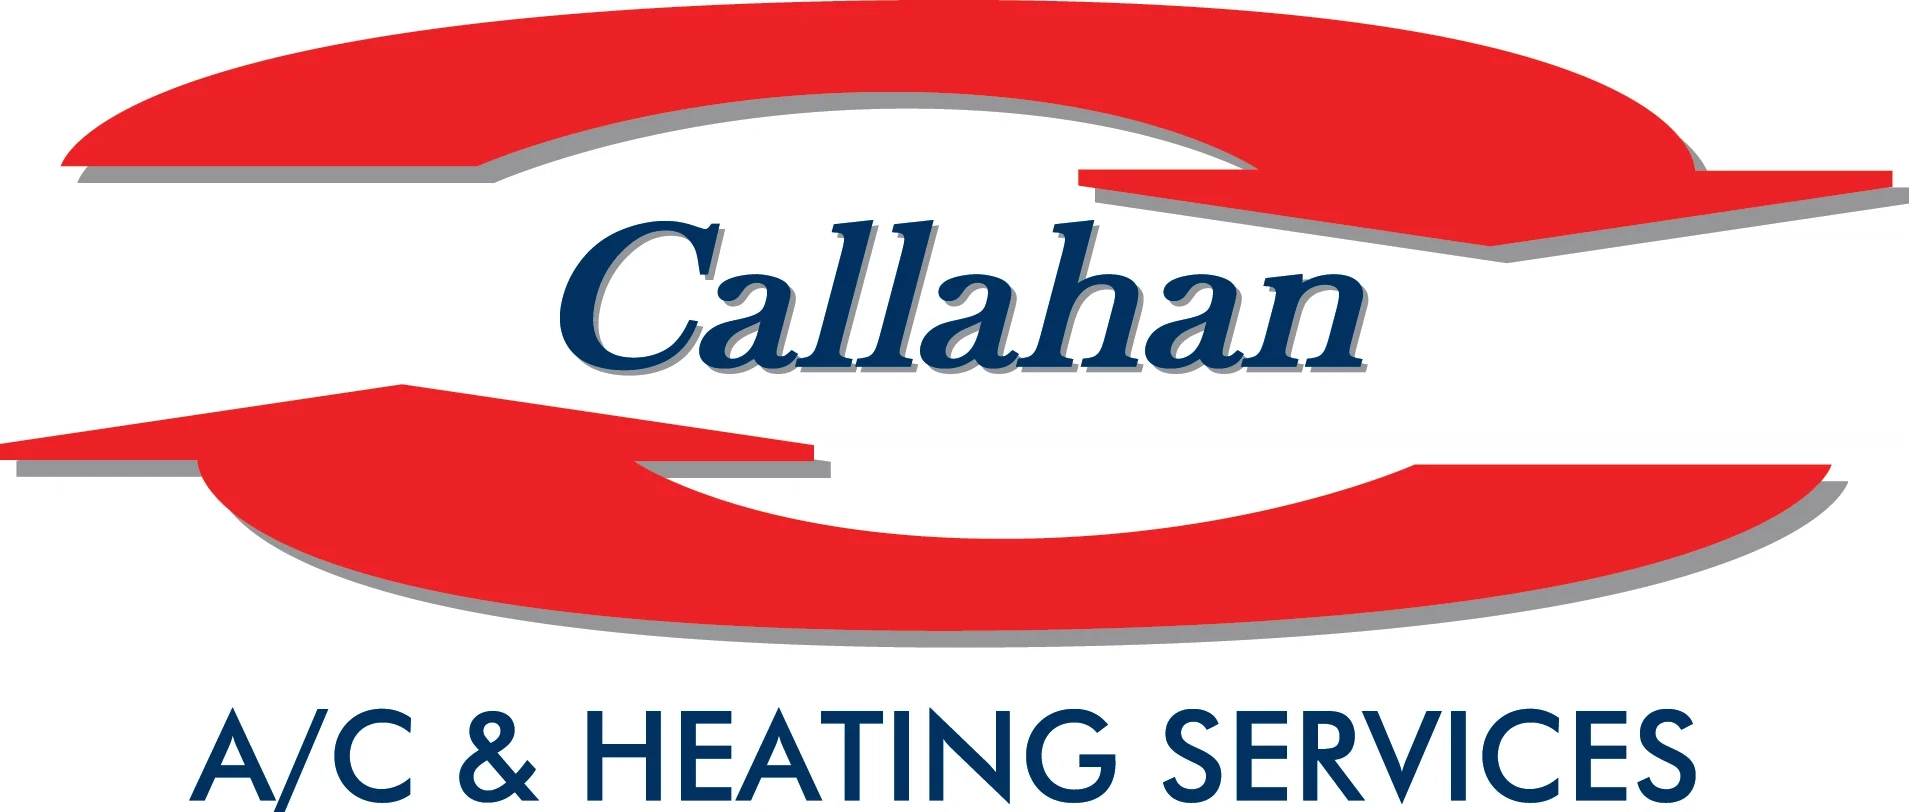 Callahan A/C & Heating Services Logo